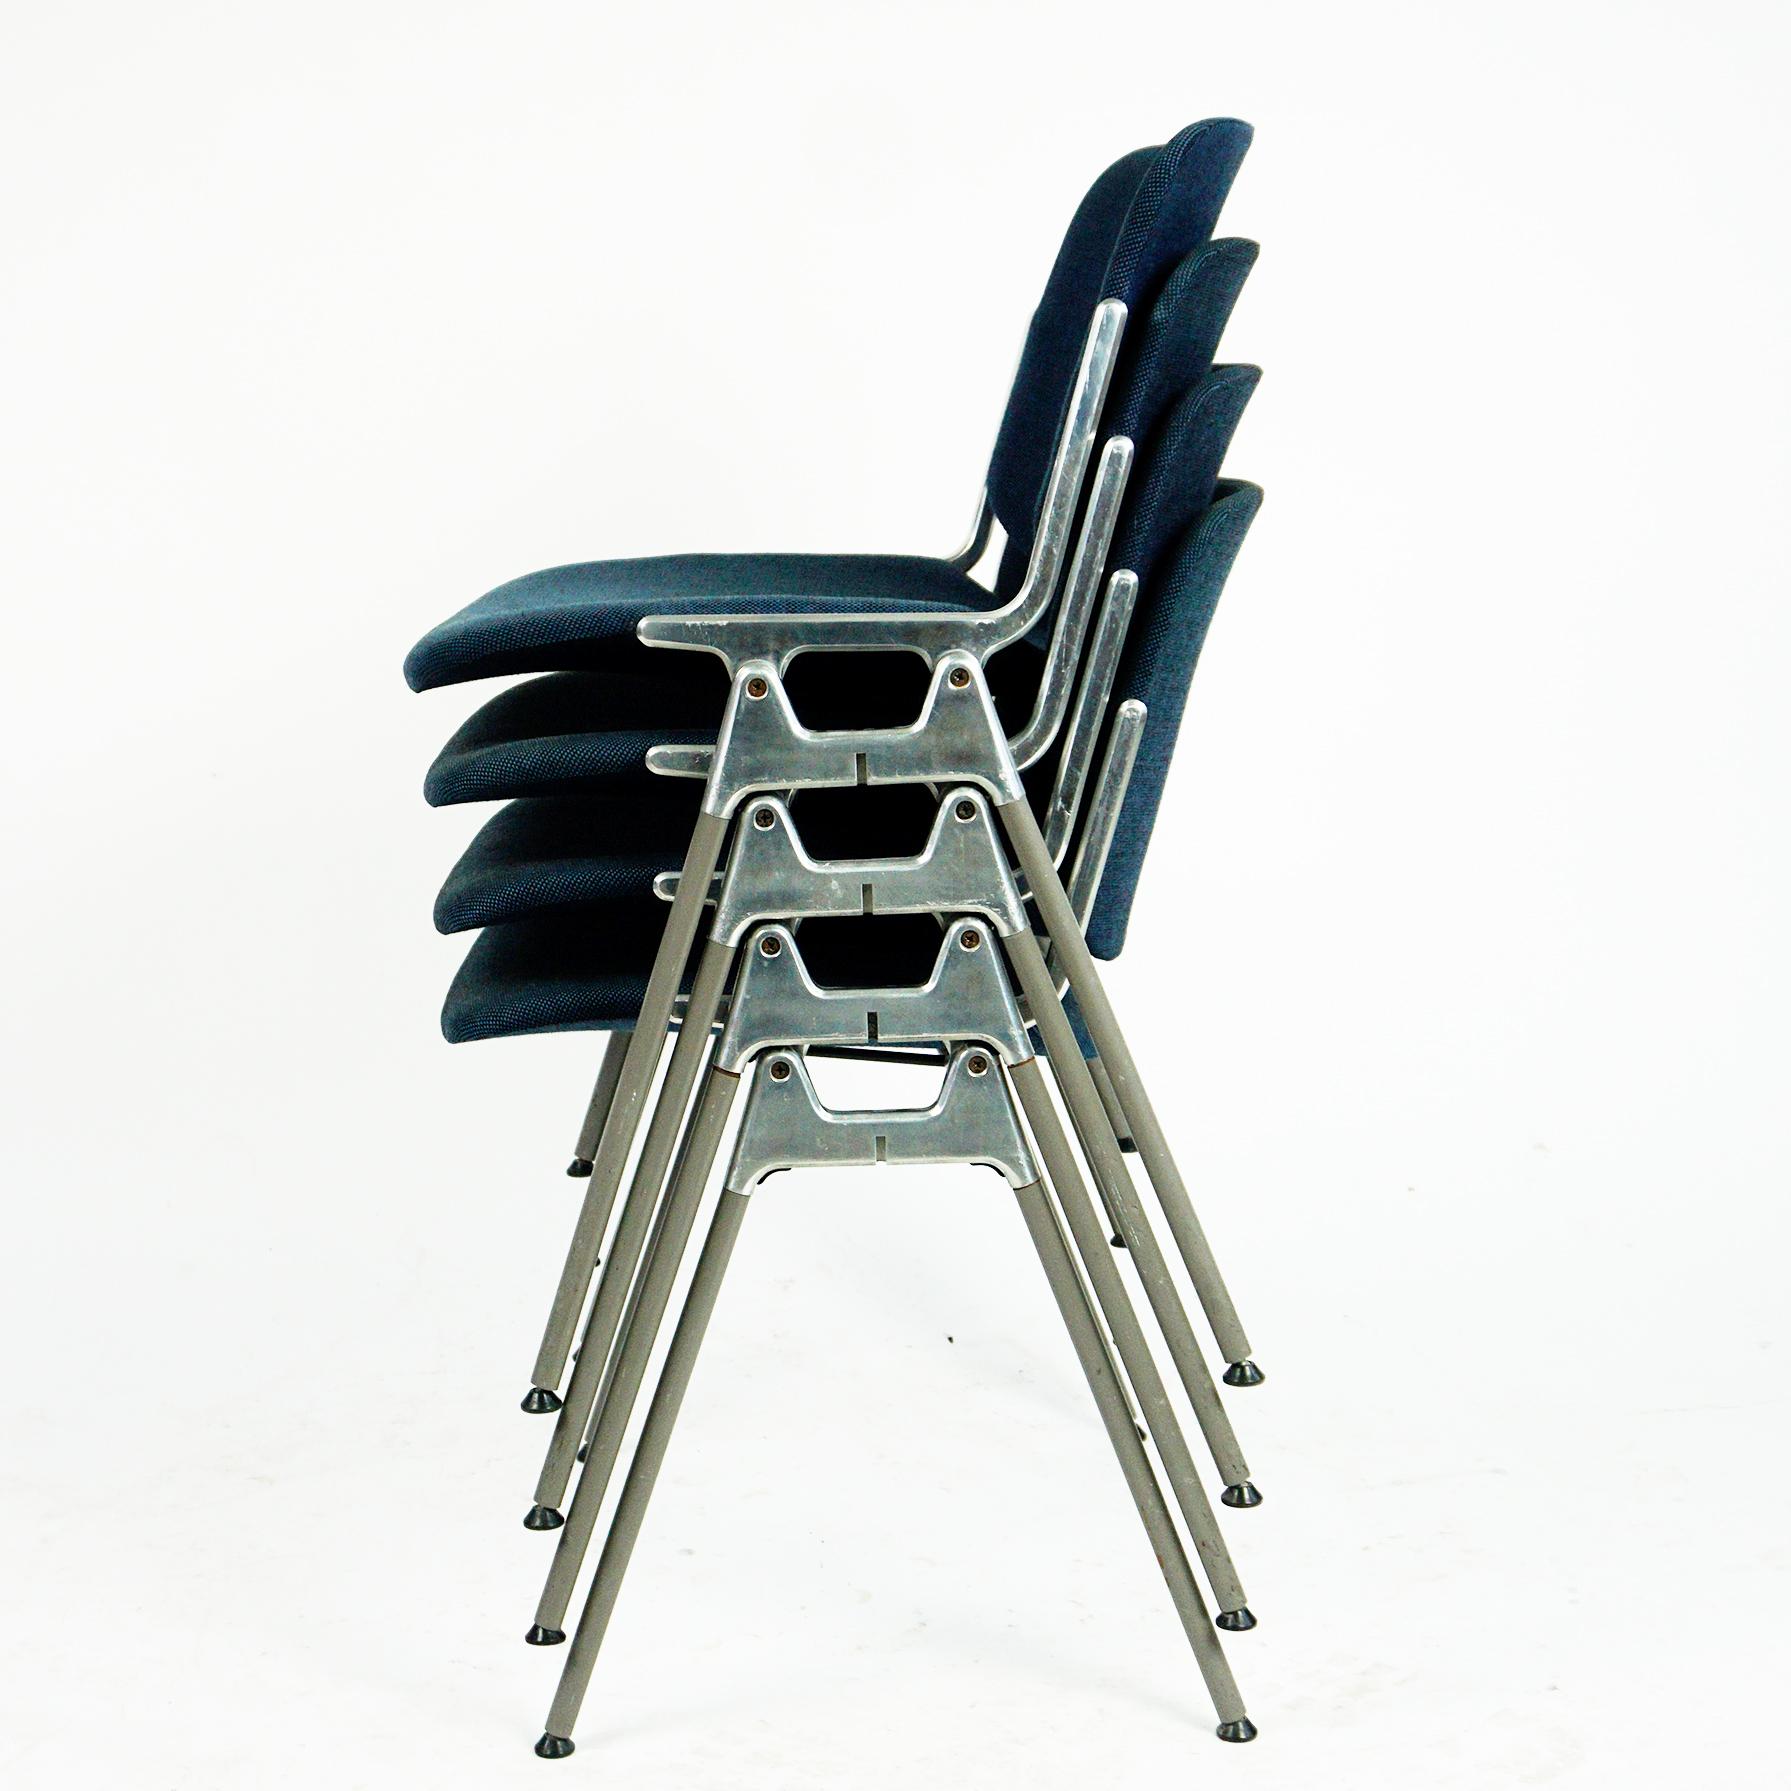 Ensemble de quatre chaises empilables DSC 106 de style moderne italien, conçues en 1965 par Giancarlo Piretti pour Castelli. Cet ensemble comprend des sièges et des dossiers recouverts de tissu bleu en très bon état, avec seulement quelques signes